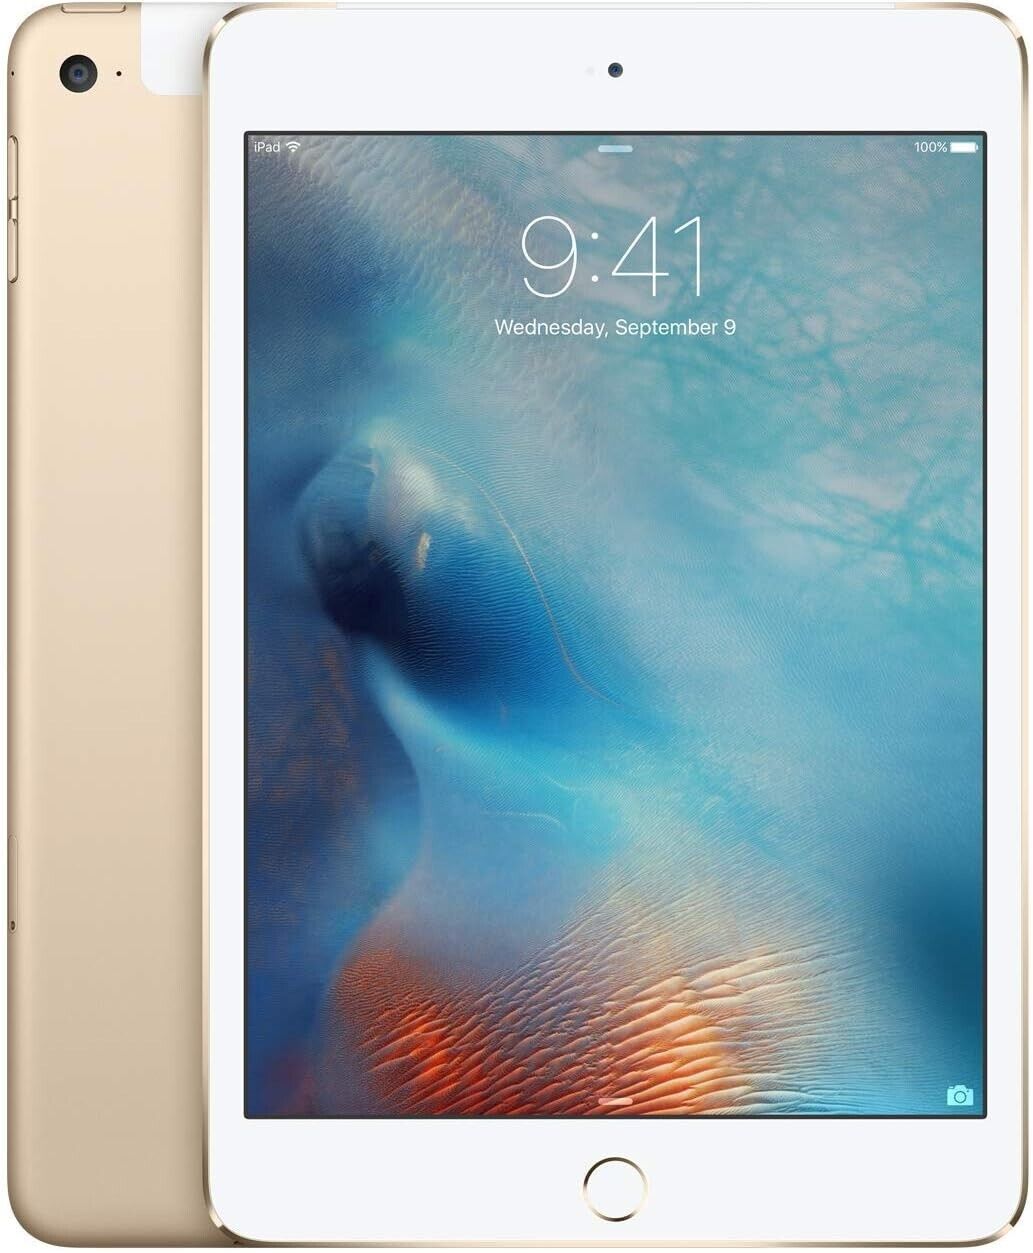 (Defective LCD) Apple iPad mini 4 16GB, Wi-Fi+4G, 7.9in - Gold